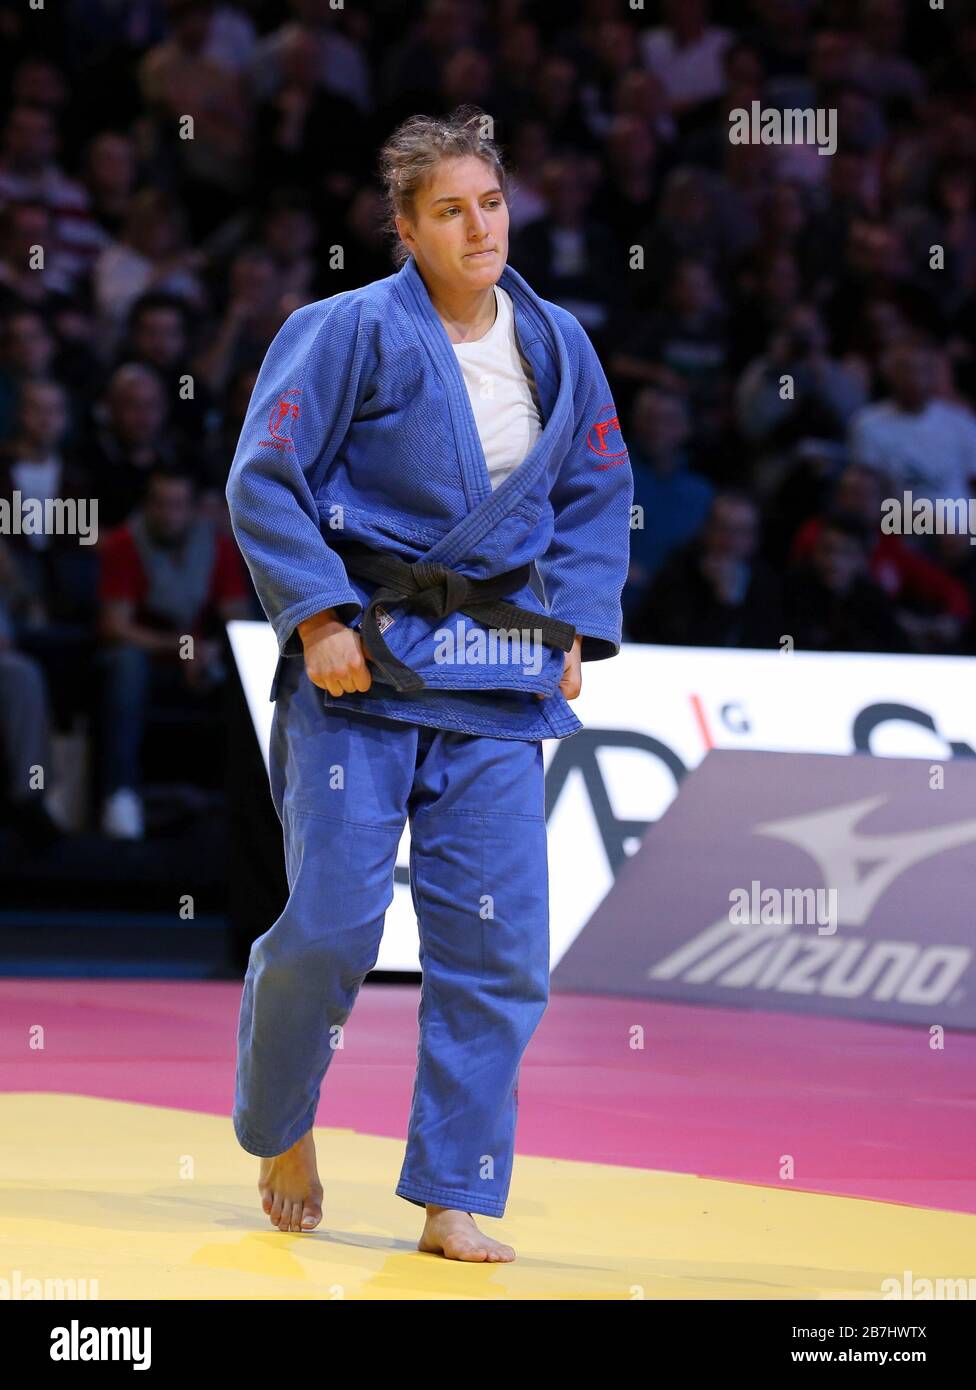 Paris, France - 08th Feb, 2020: Masako Doi for Japan against Andreja Leski for Slovenia, Women's -63 kg, Bronze Medal Match (Credit: Mickael Chavet) Stock Photo